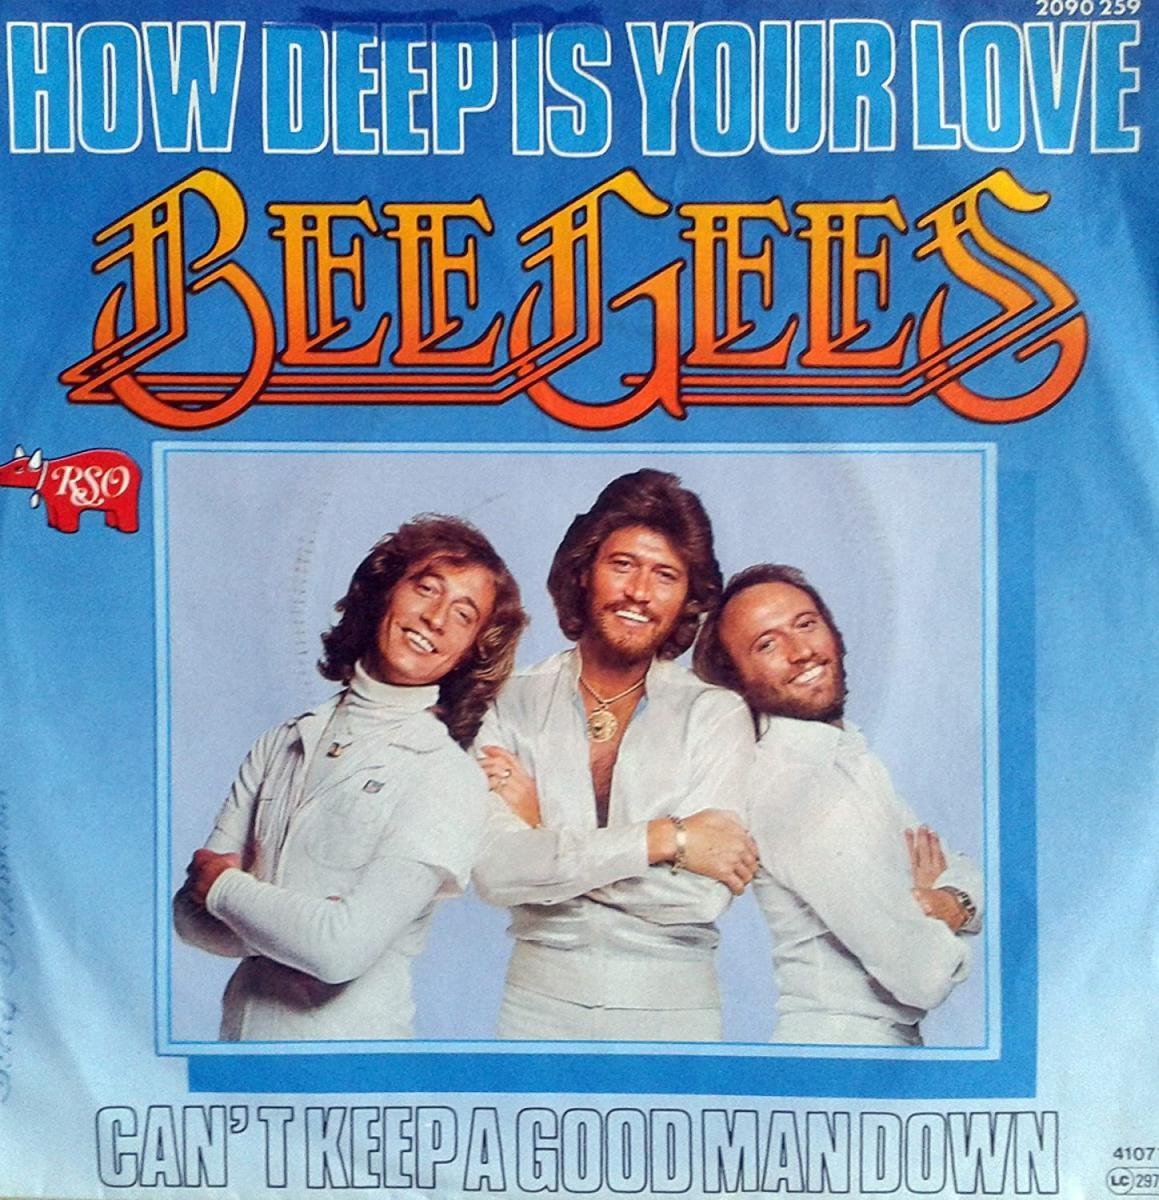 Bee Gees - How Deep is Your Love - Tradução - Gotas de PazGotas de Paz